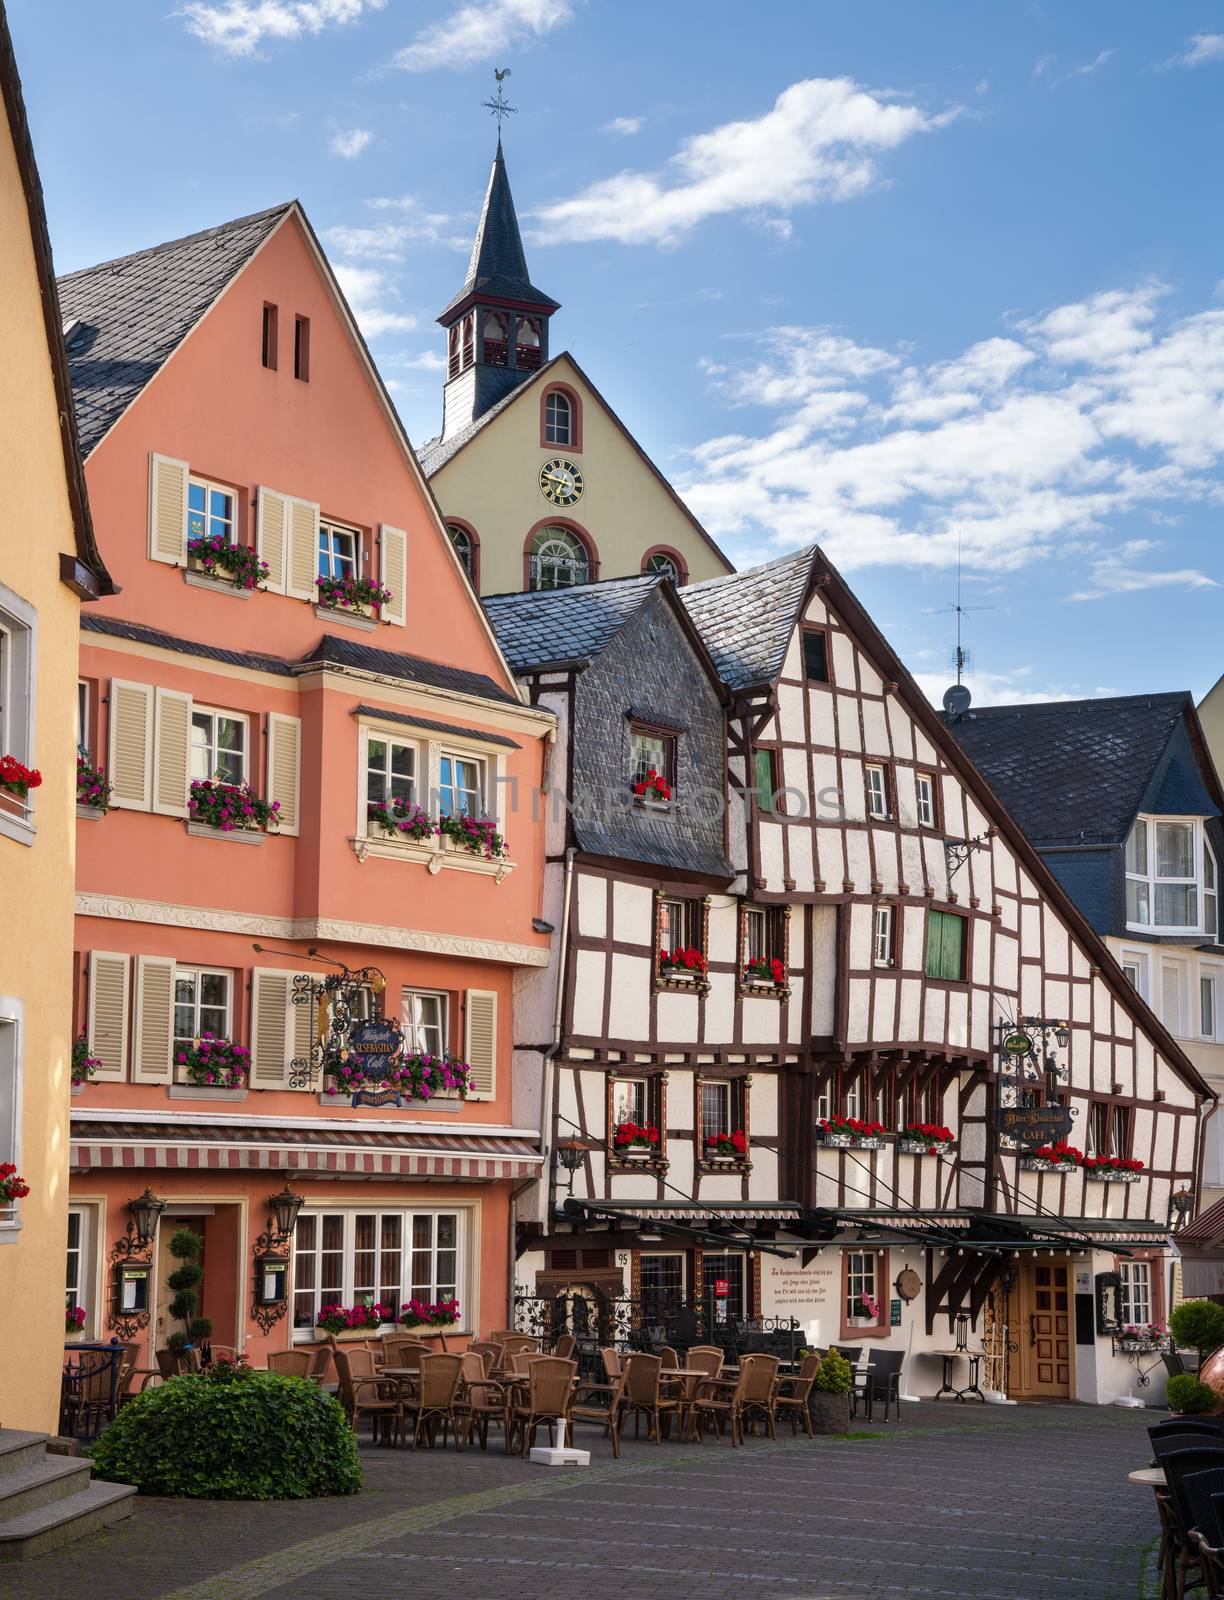 Bernkastel, Moselle, Germany by alfotokunst